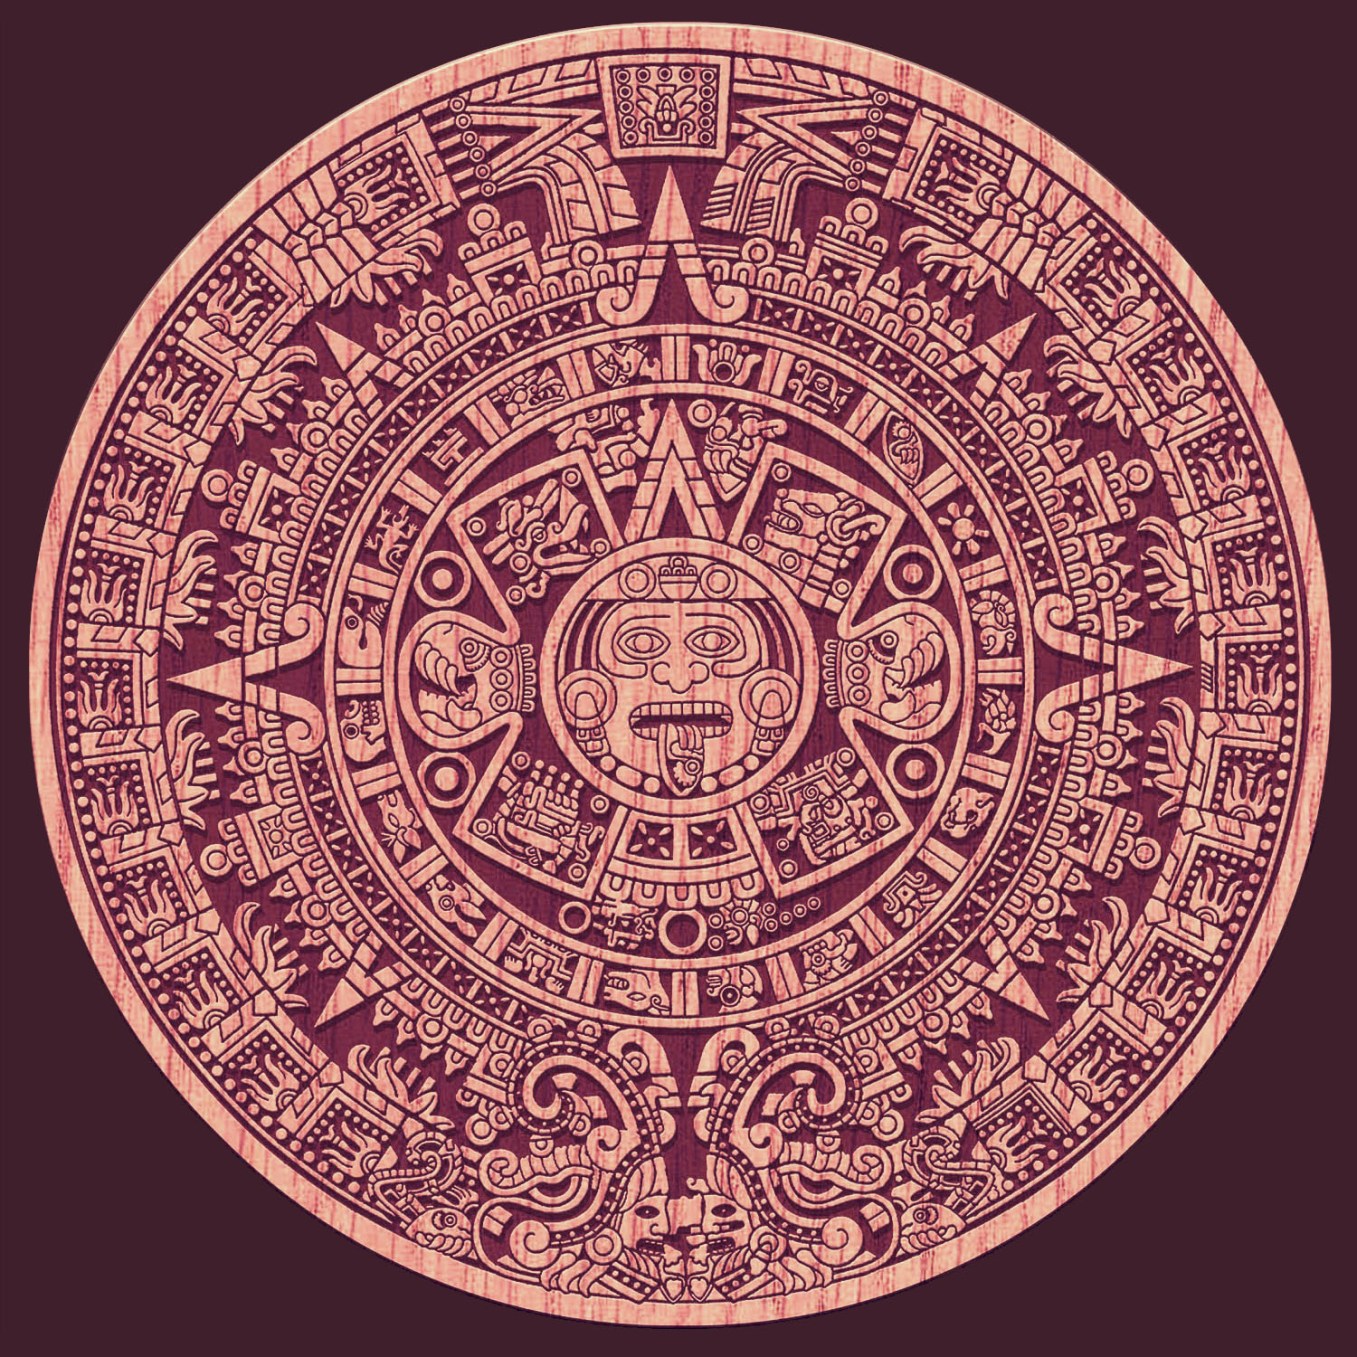 MUNGKOPAS Memahami Kalender Suku Maya